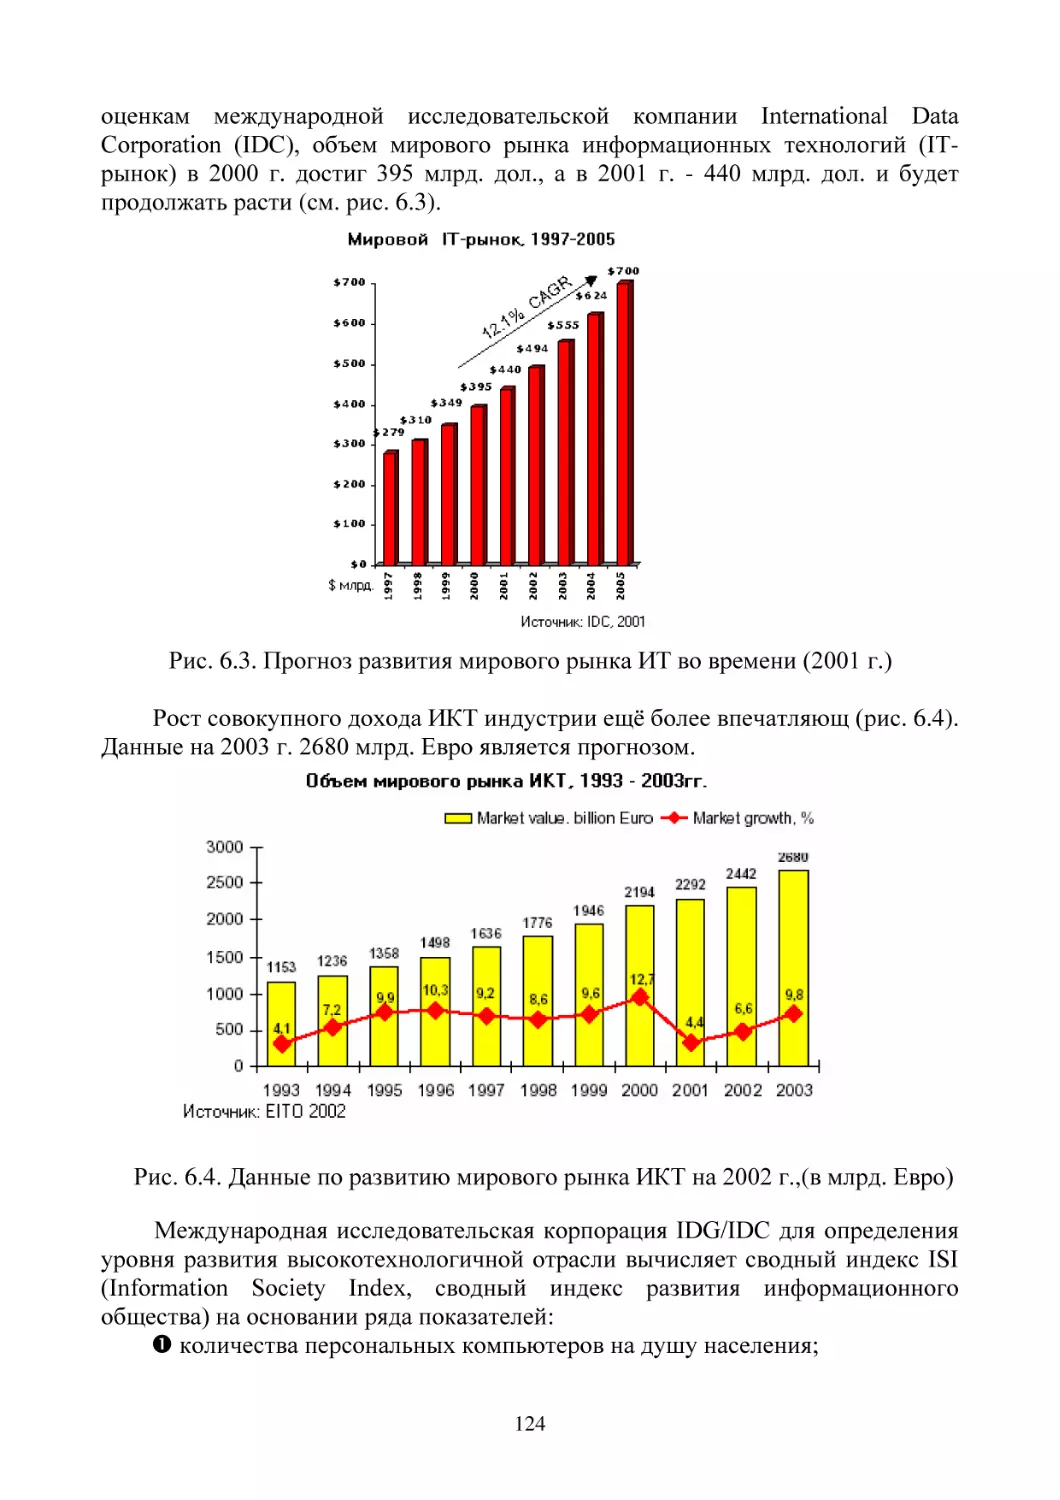 Рис. 6.3. Прогноз развития мирового рынка ИТ во времени (2001 г.)
Рис. 6.4. Данные по развитию мирового рынка ИКТ на 2002 г.,(в млрд. Евро)